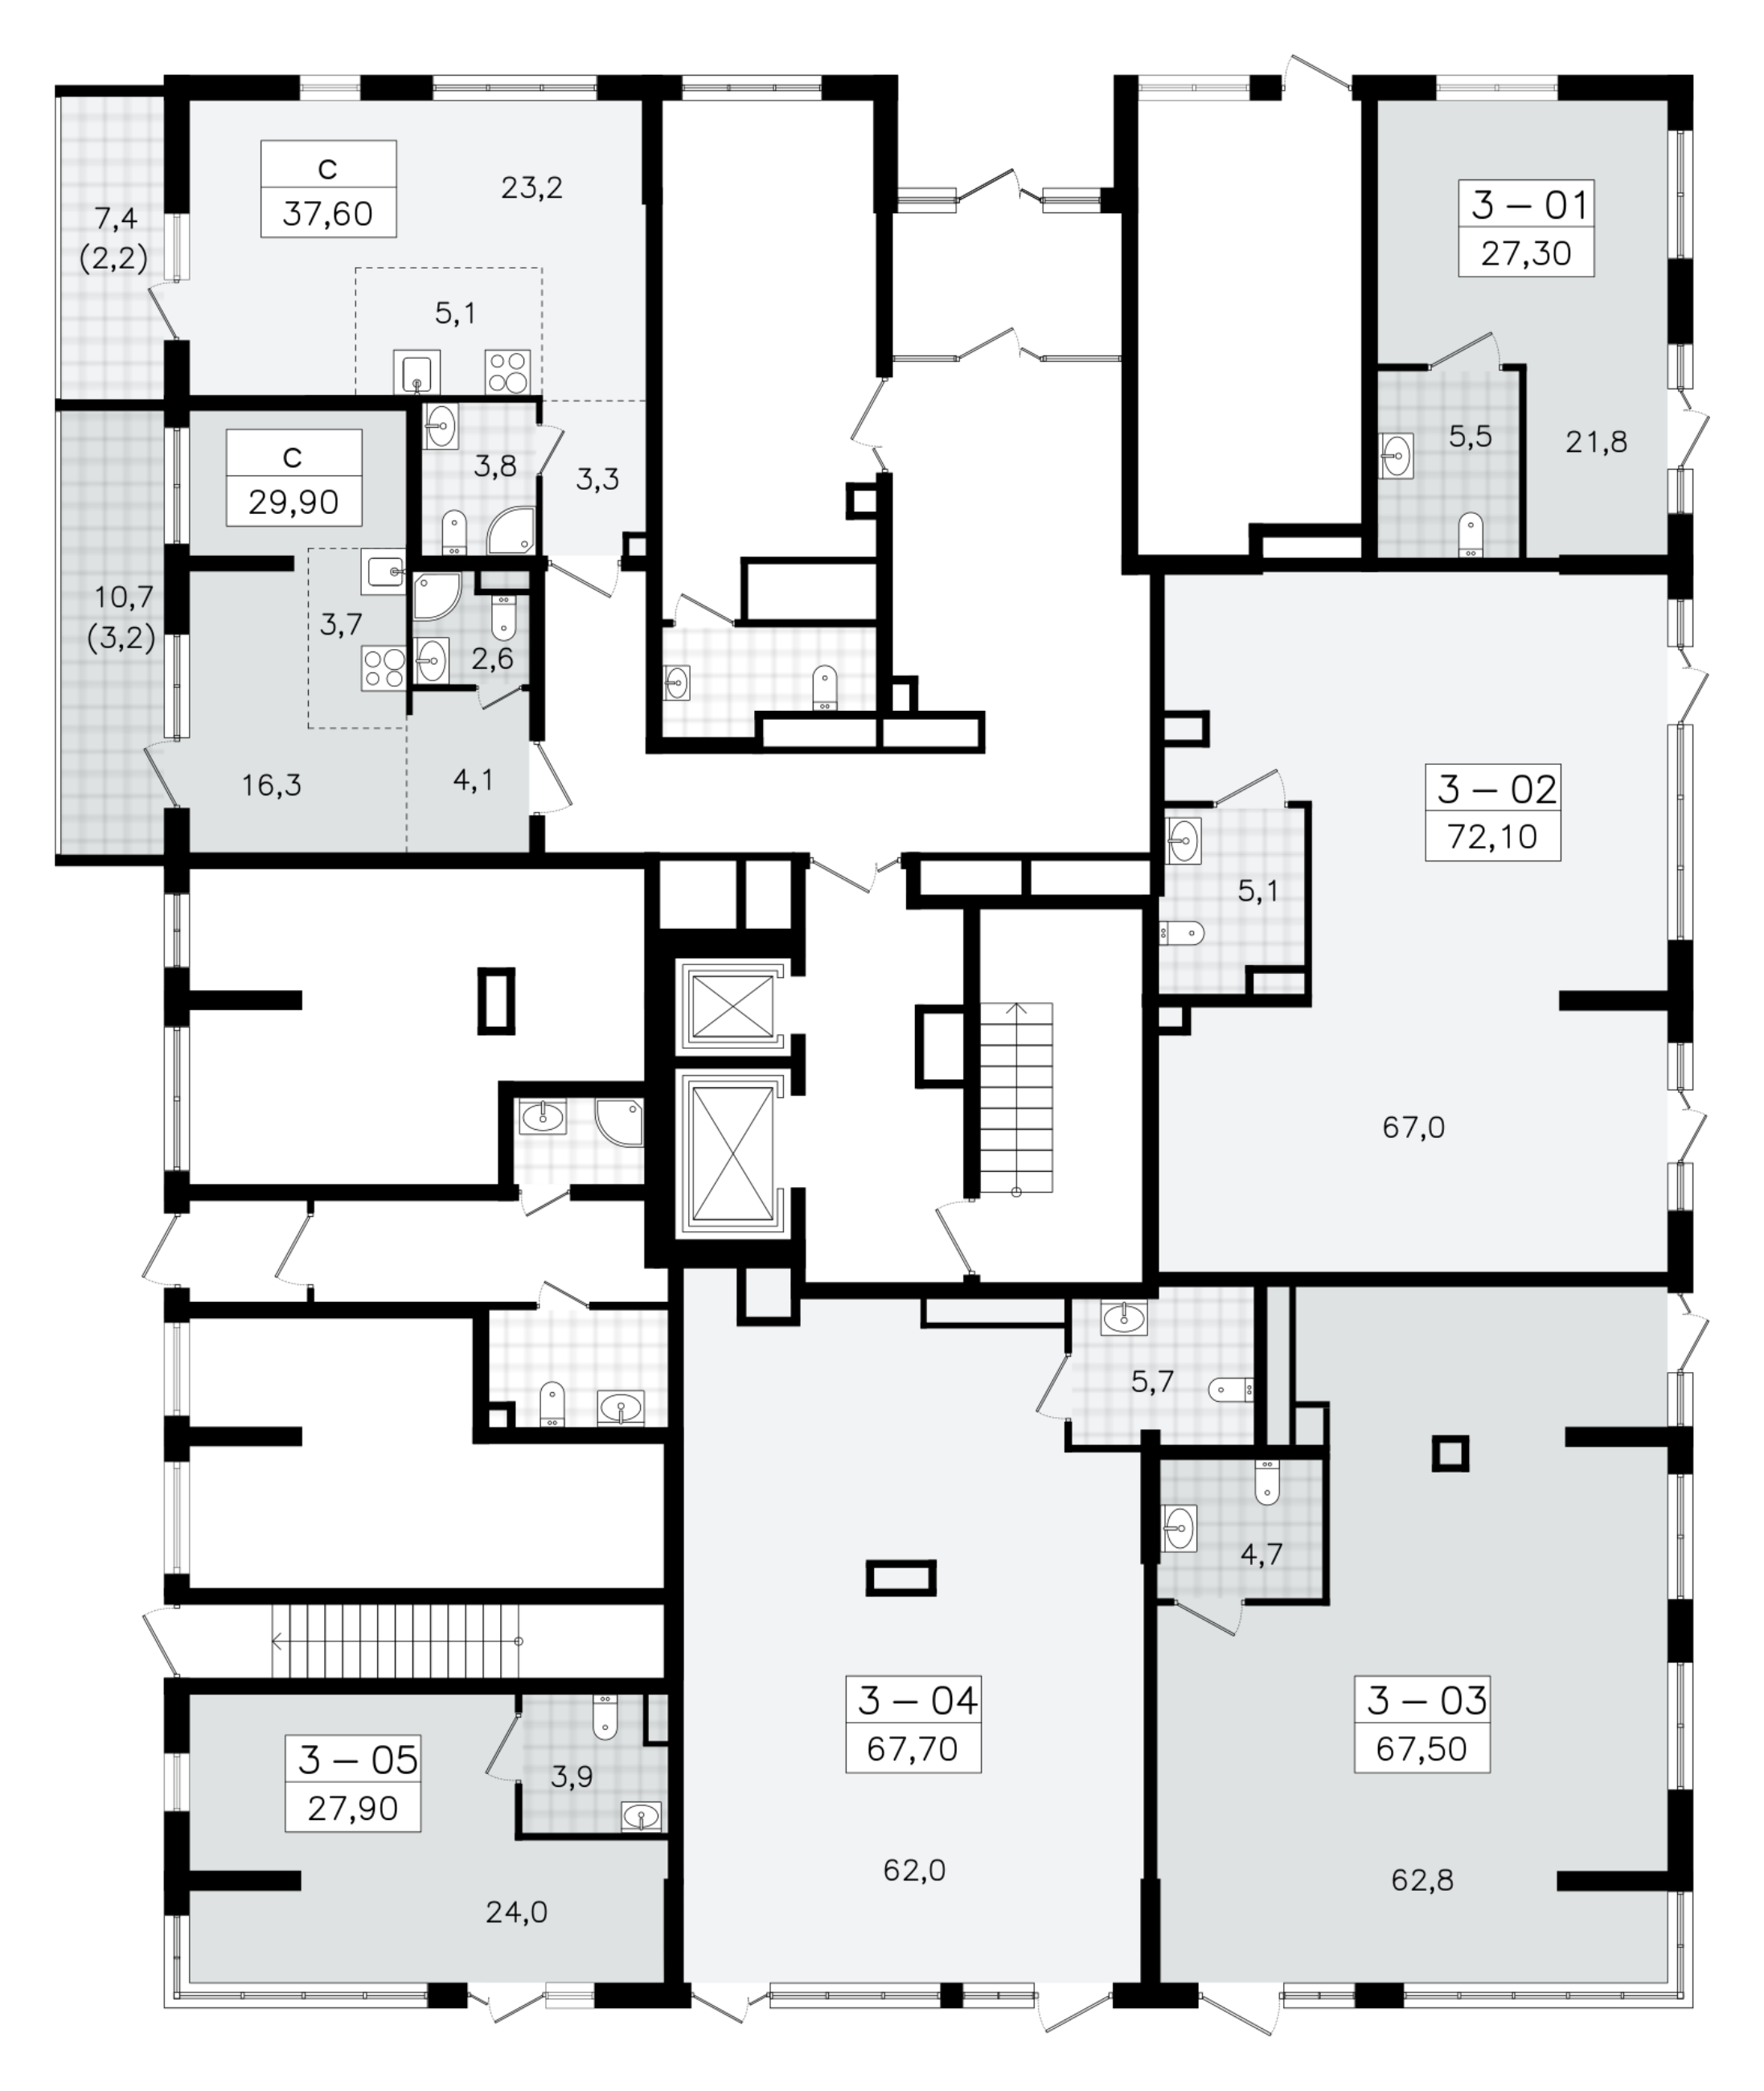 Помещение, 67.5 м² - планировка этажа